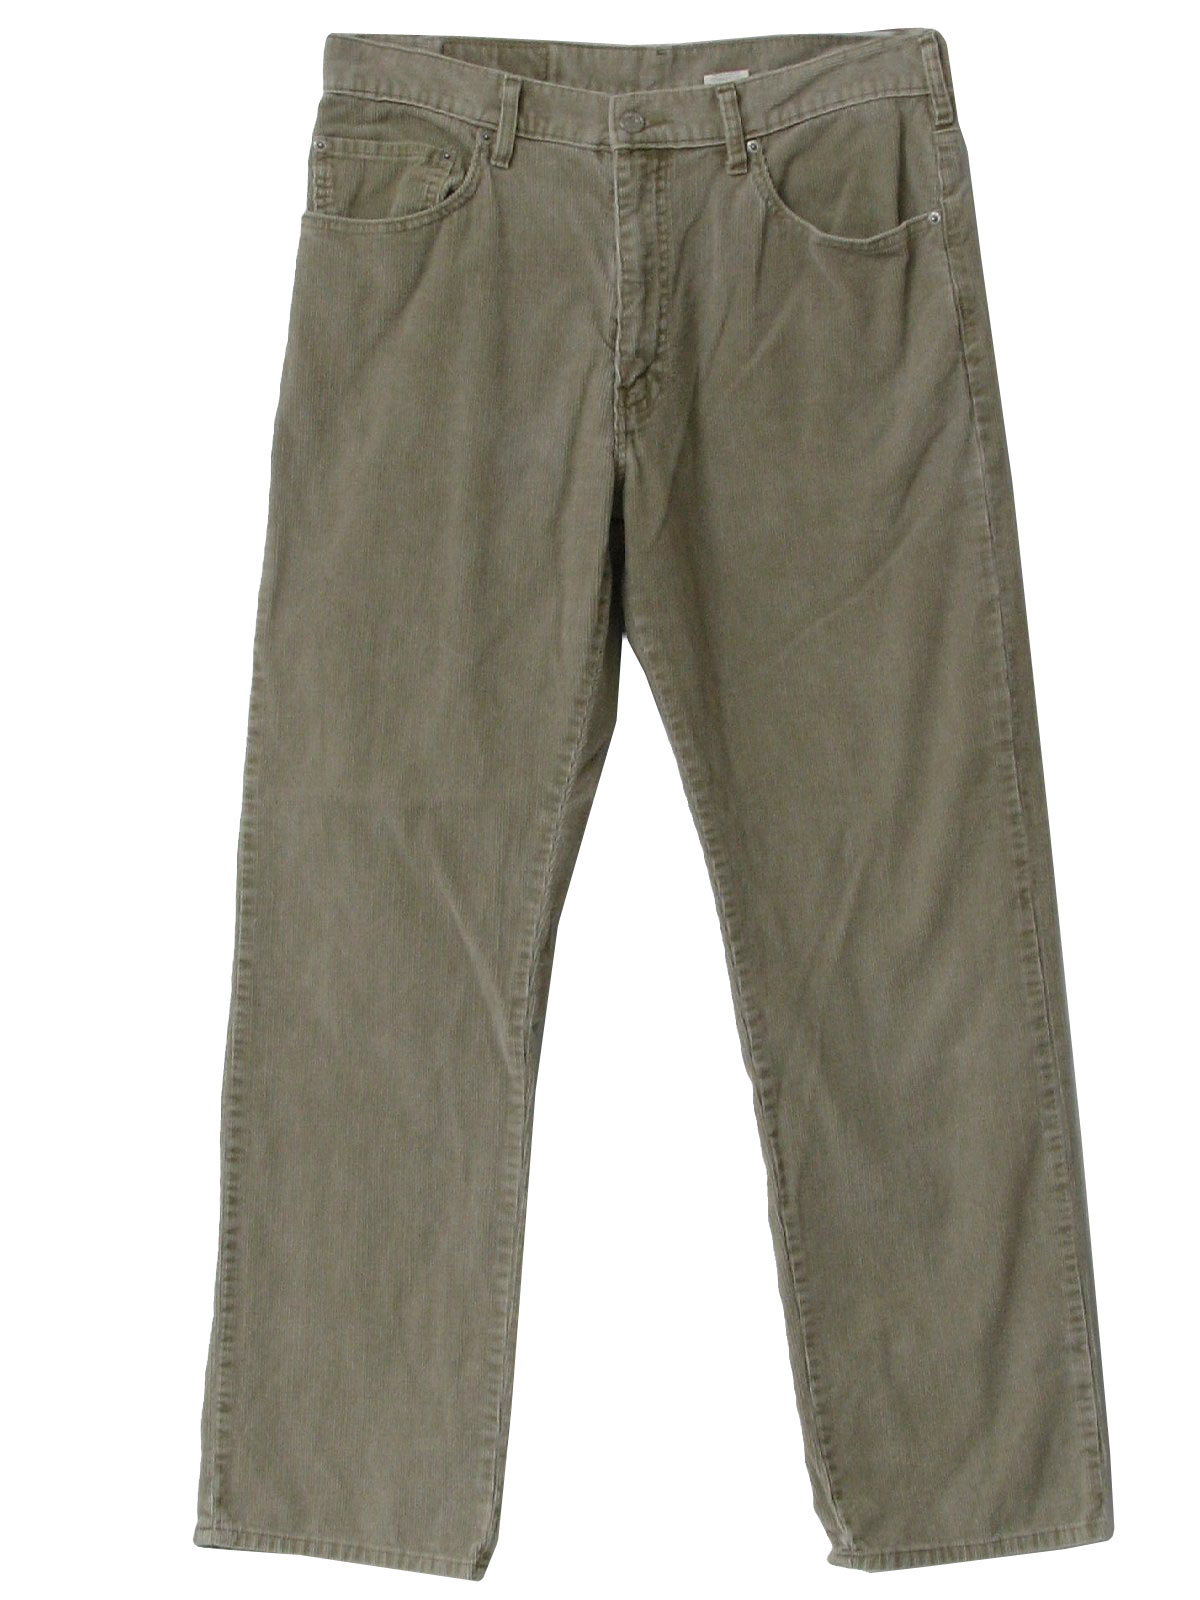 90s Retro Pants: 90s -Levis- Mens khaki cotton polyester standard wale ...